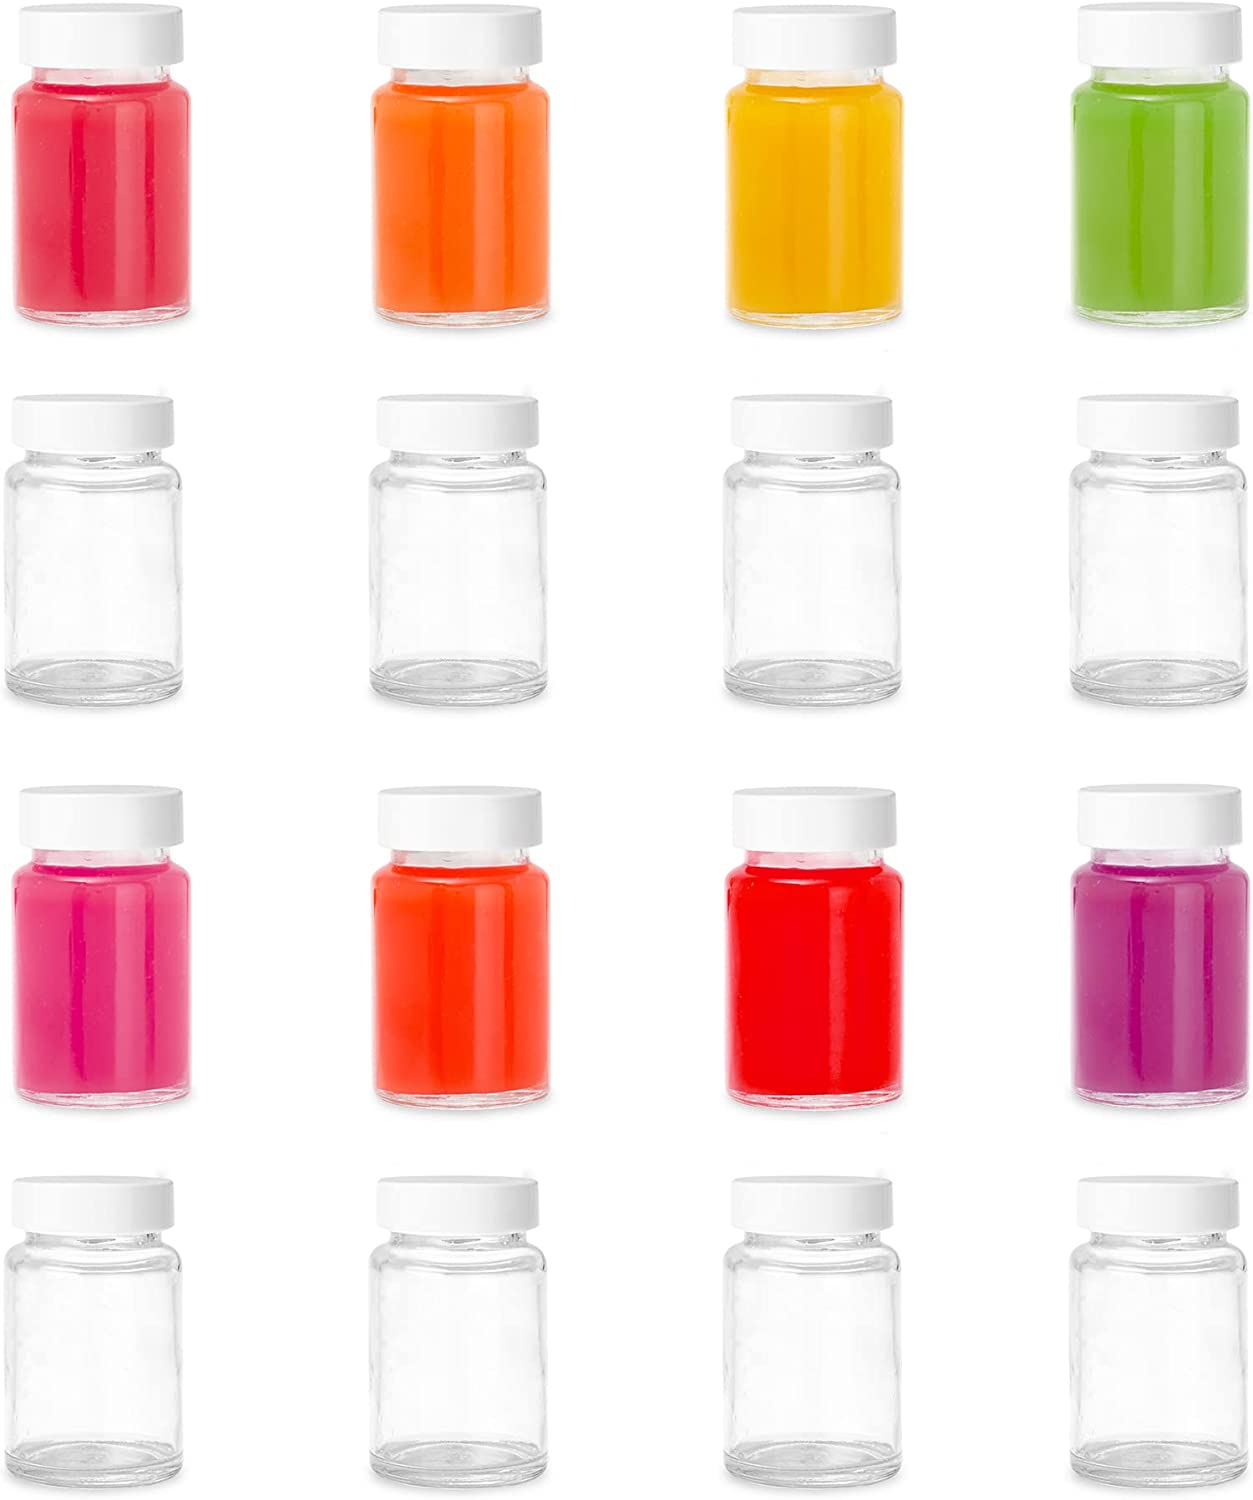 Ilyapa Glass Juice Shot Bottles Pack of 16 - 4oz On The Go Beverage St -  ilyapa